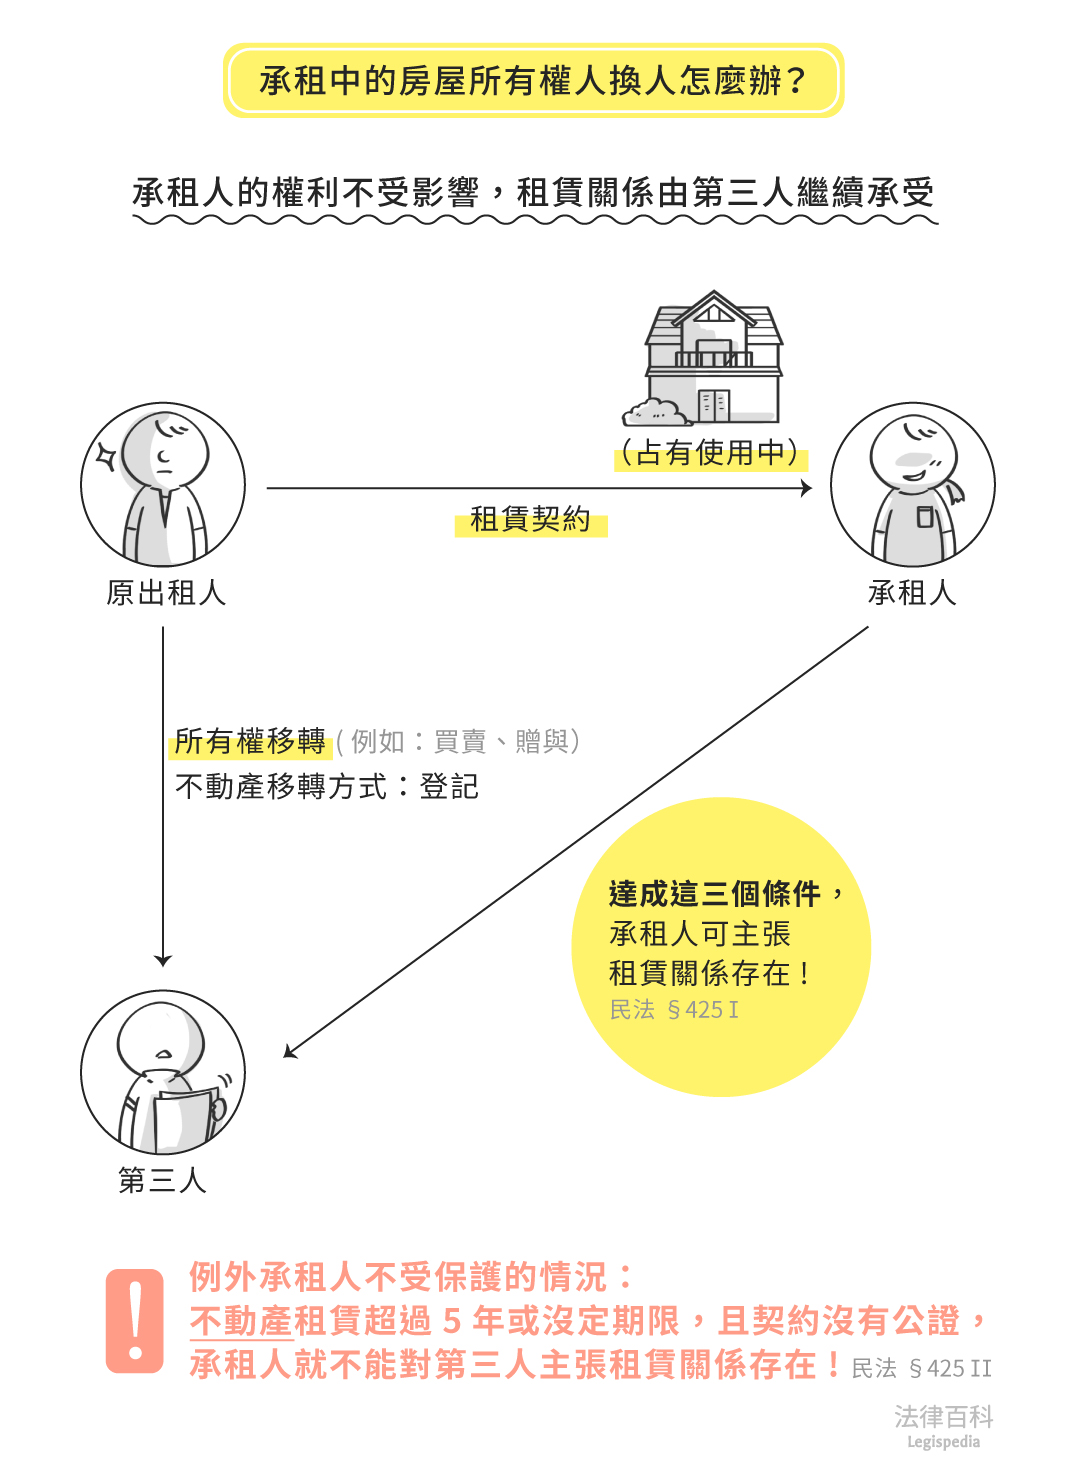 圖1　承租中的房屋所有權人換人怎麼辦？||資料來源：張博洋　/　繪圖：Yen